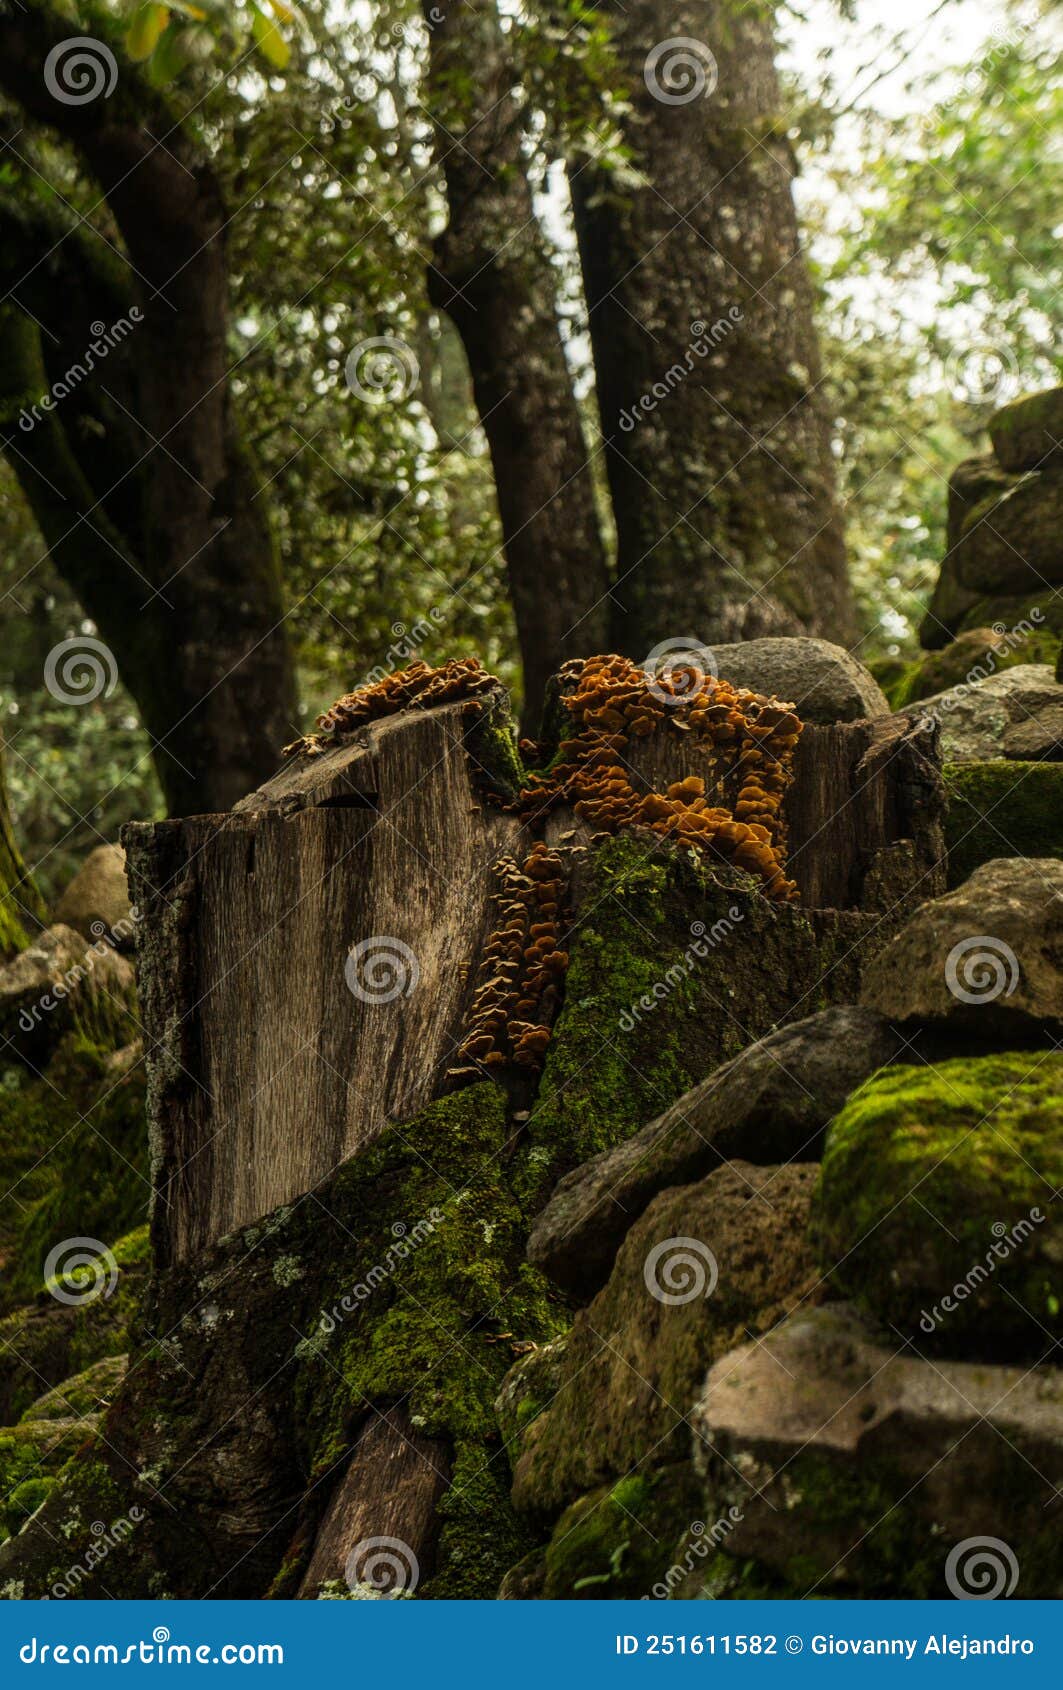 mushrooms growing on a felled tree